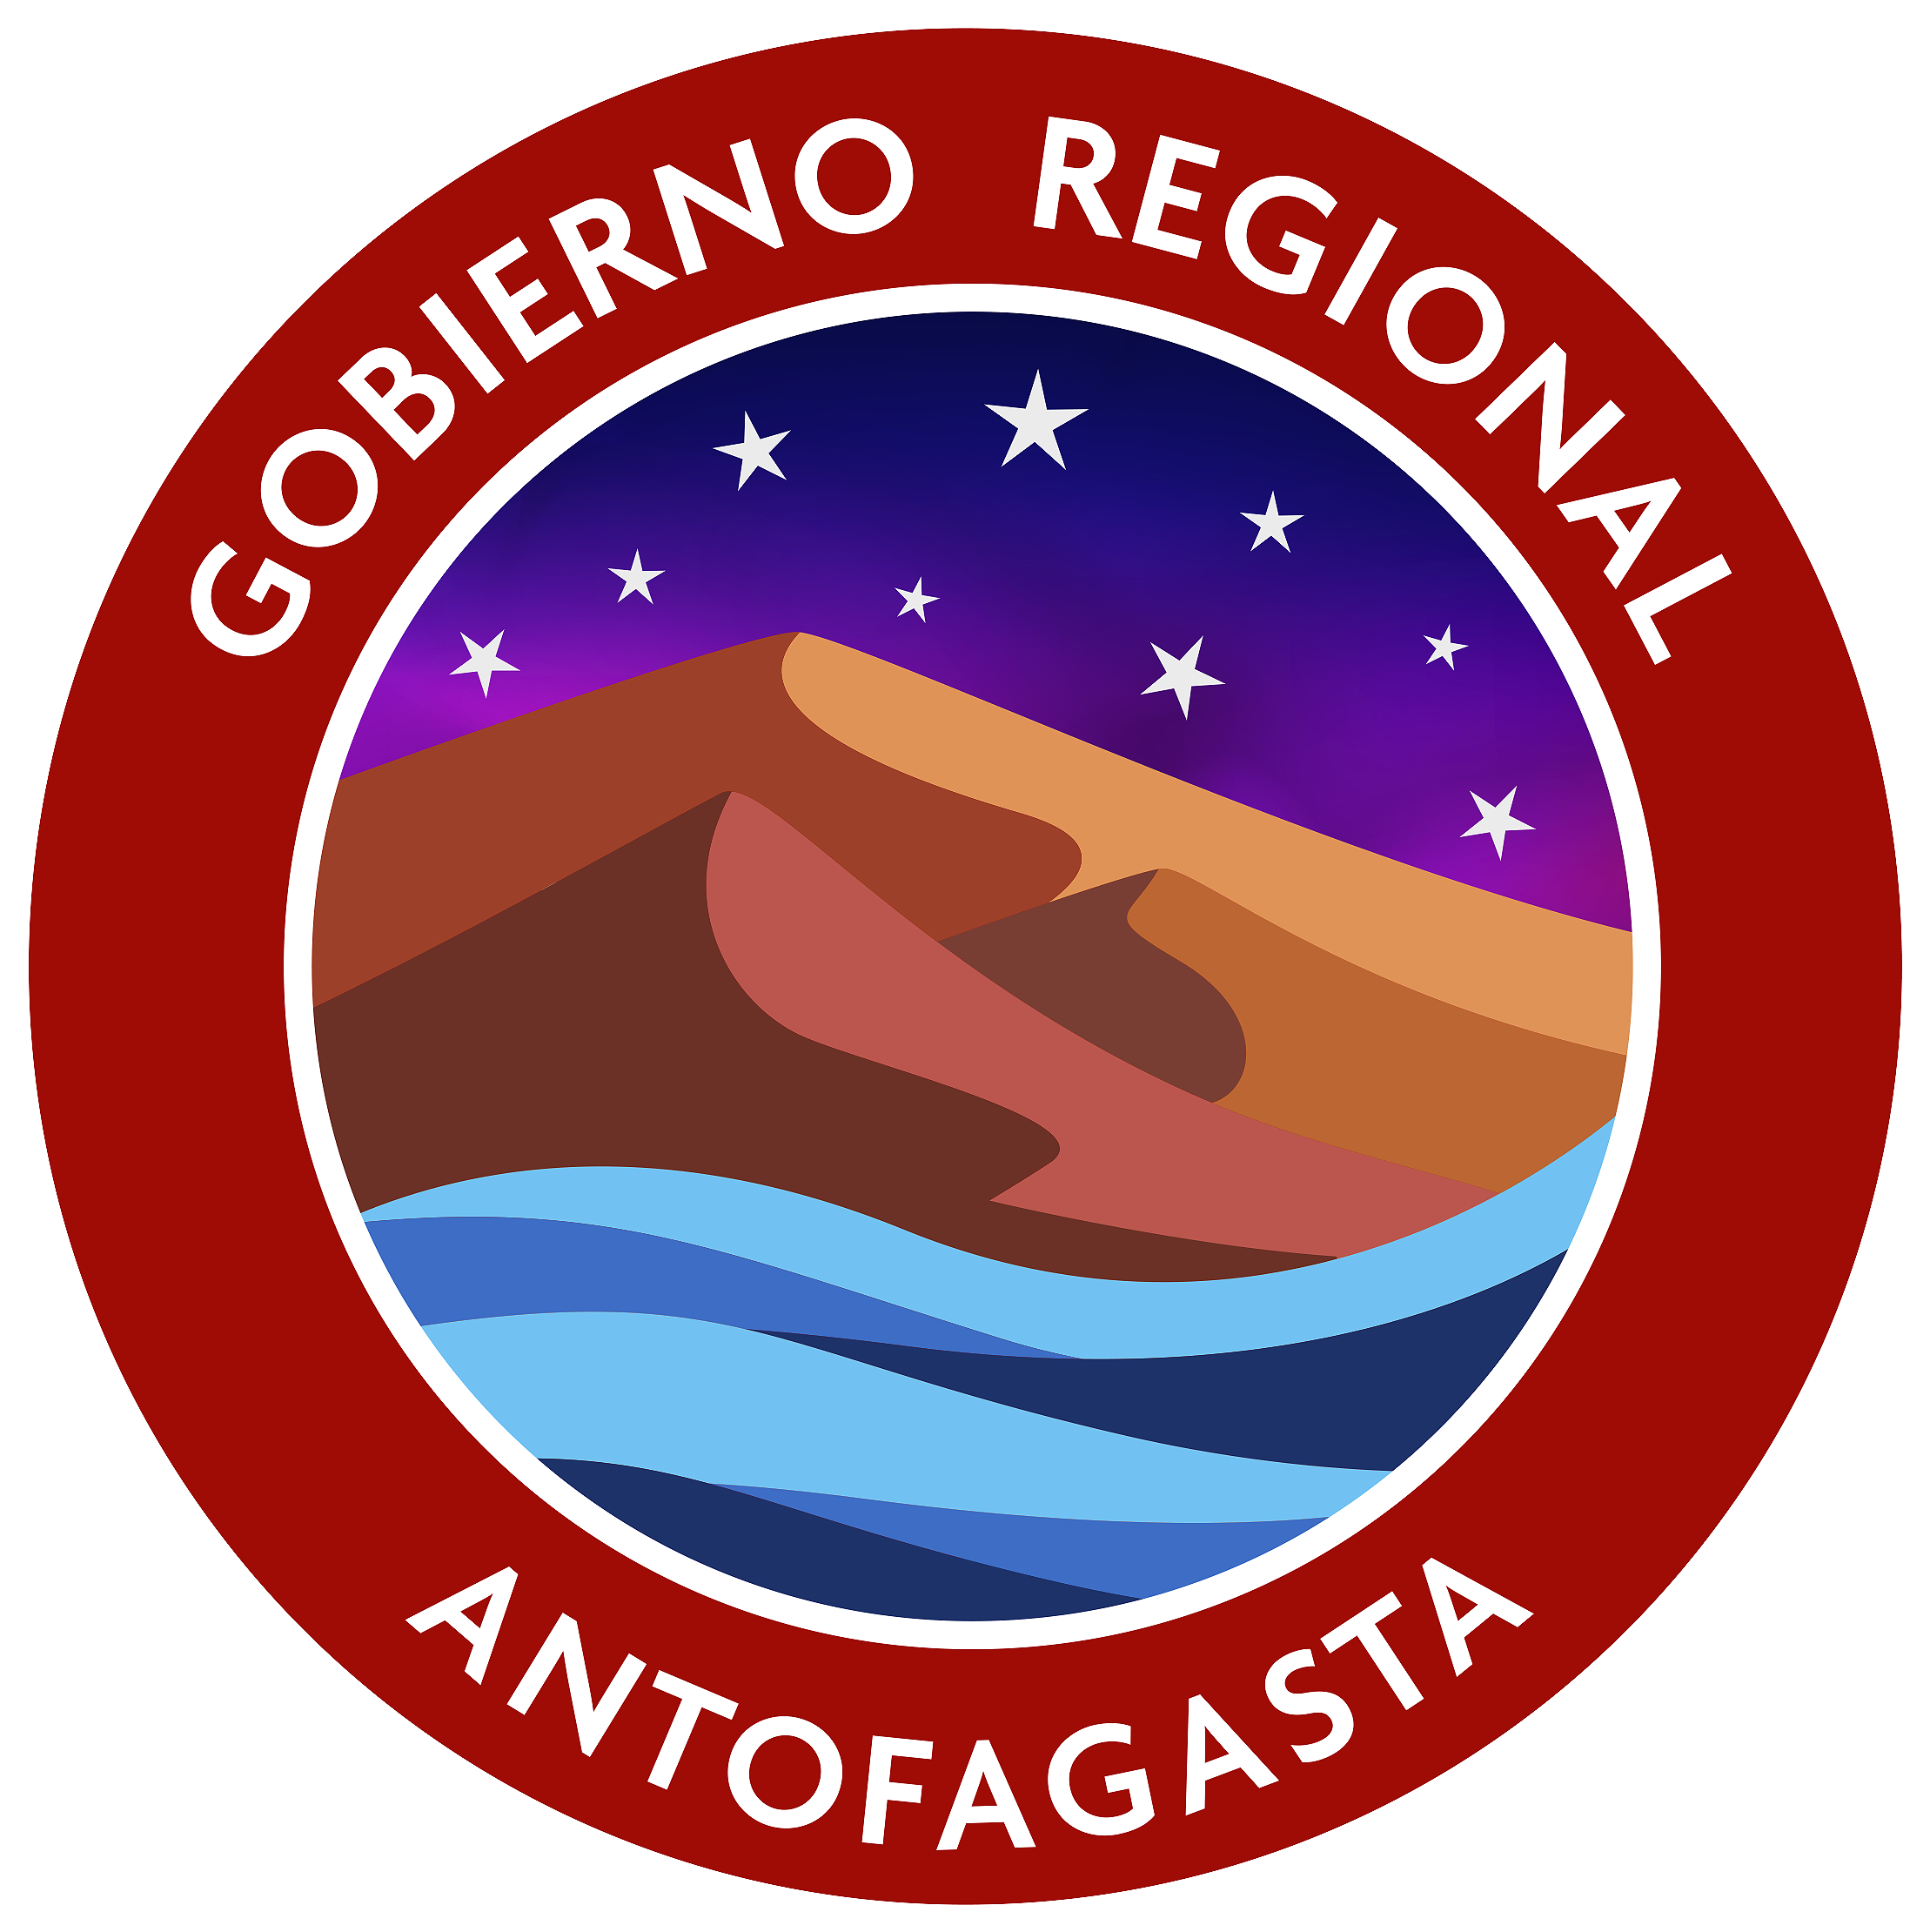 GORE - Antofagasta